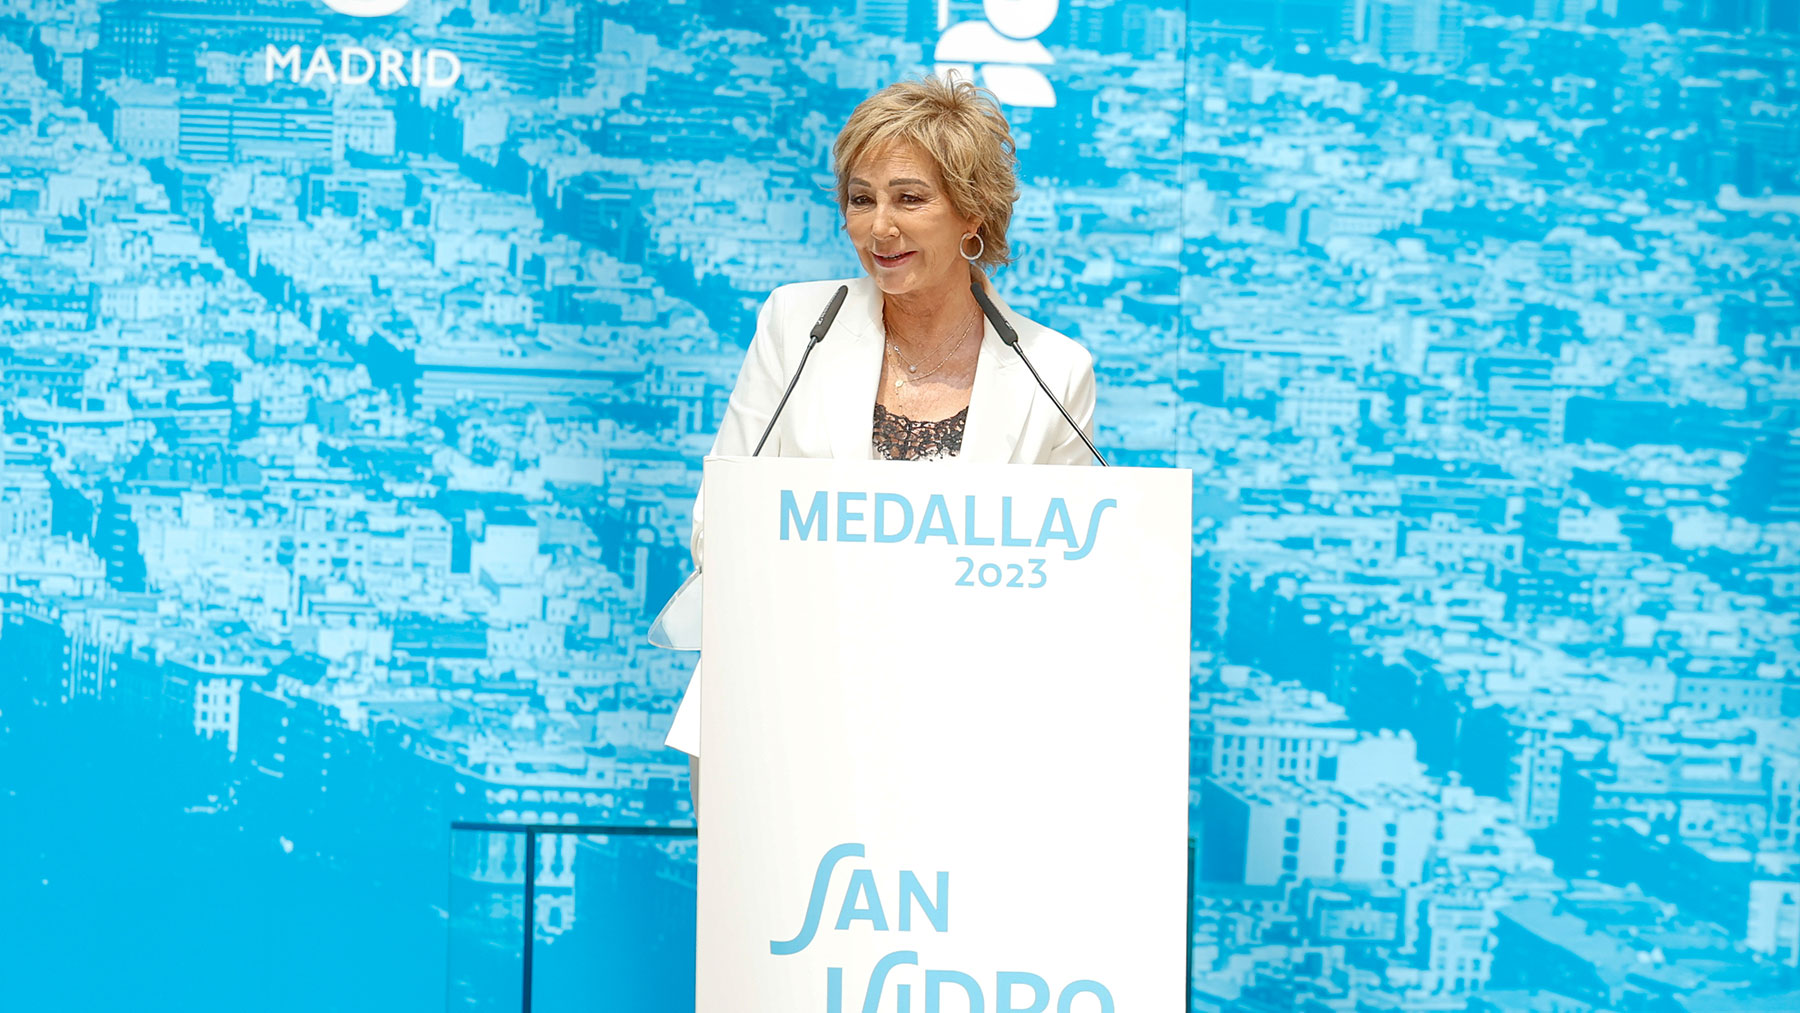 La periodista al recibir la Medalla de Honor de Madrid / Gtres